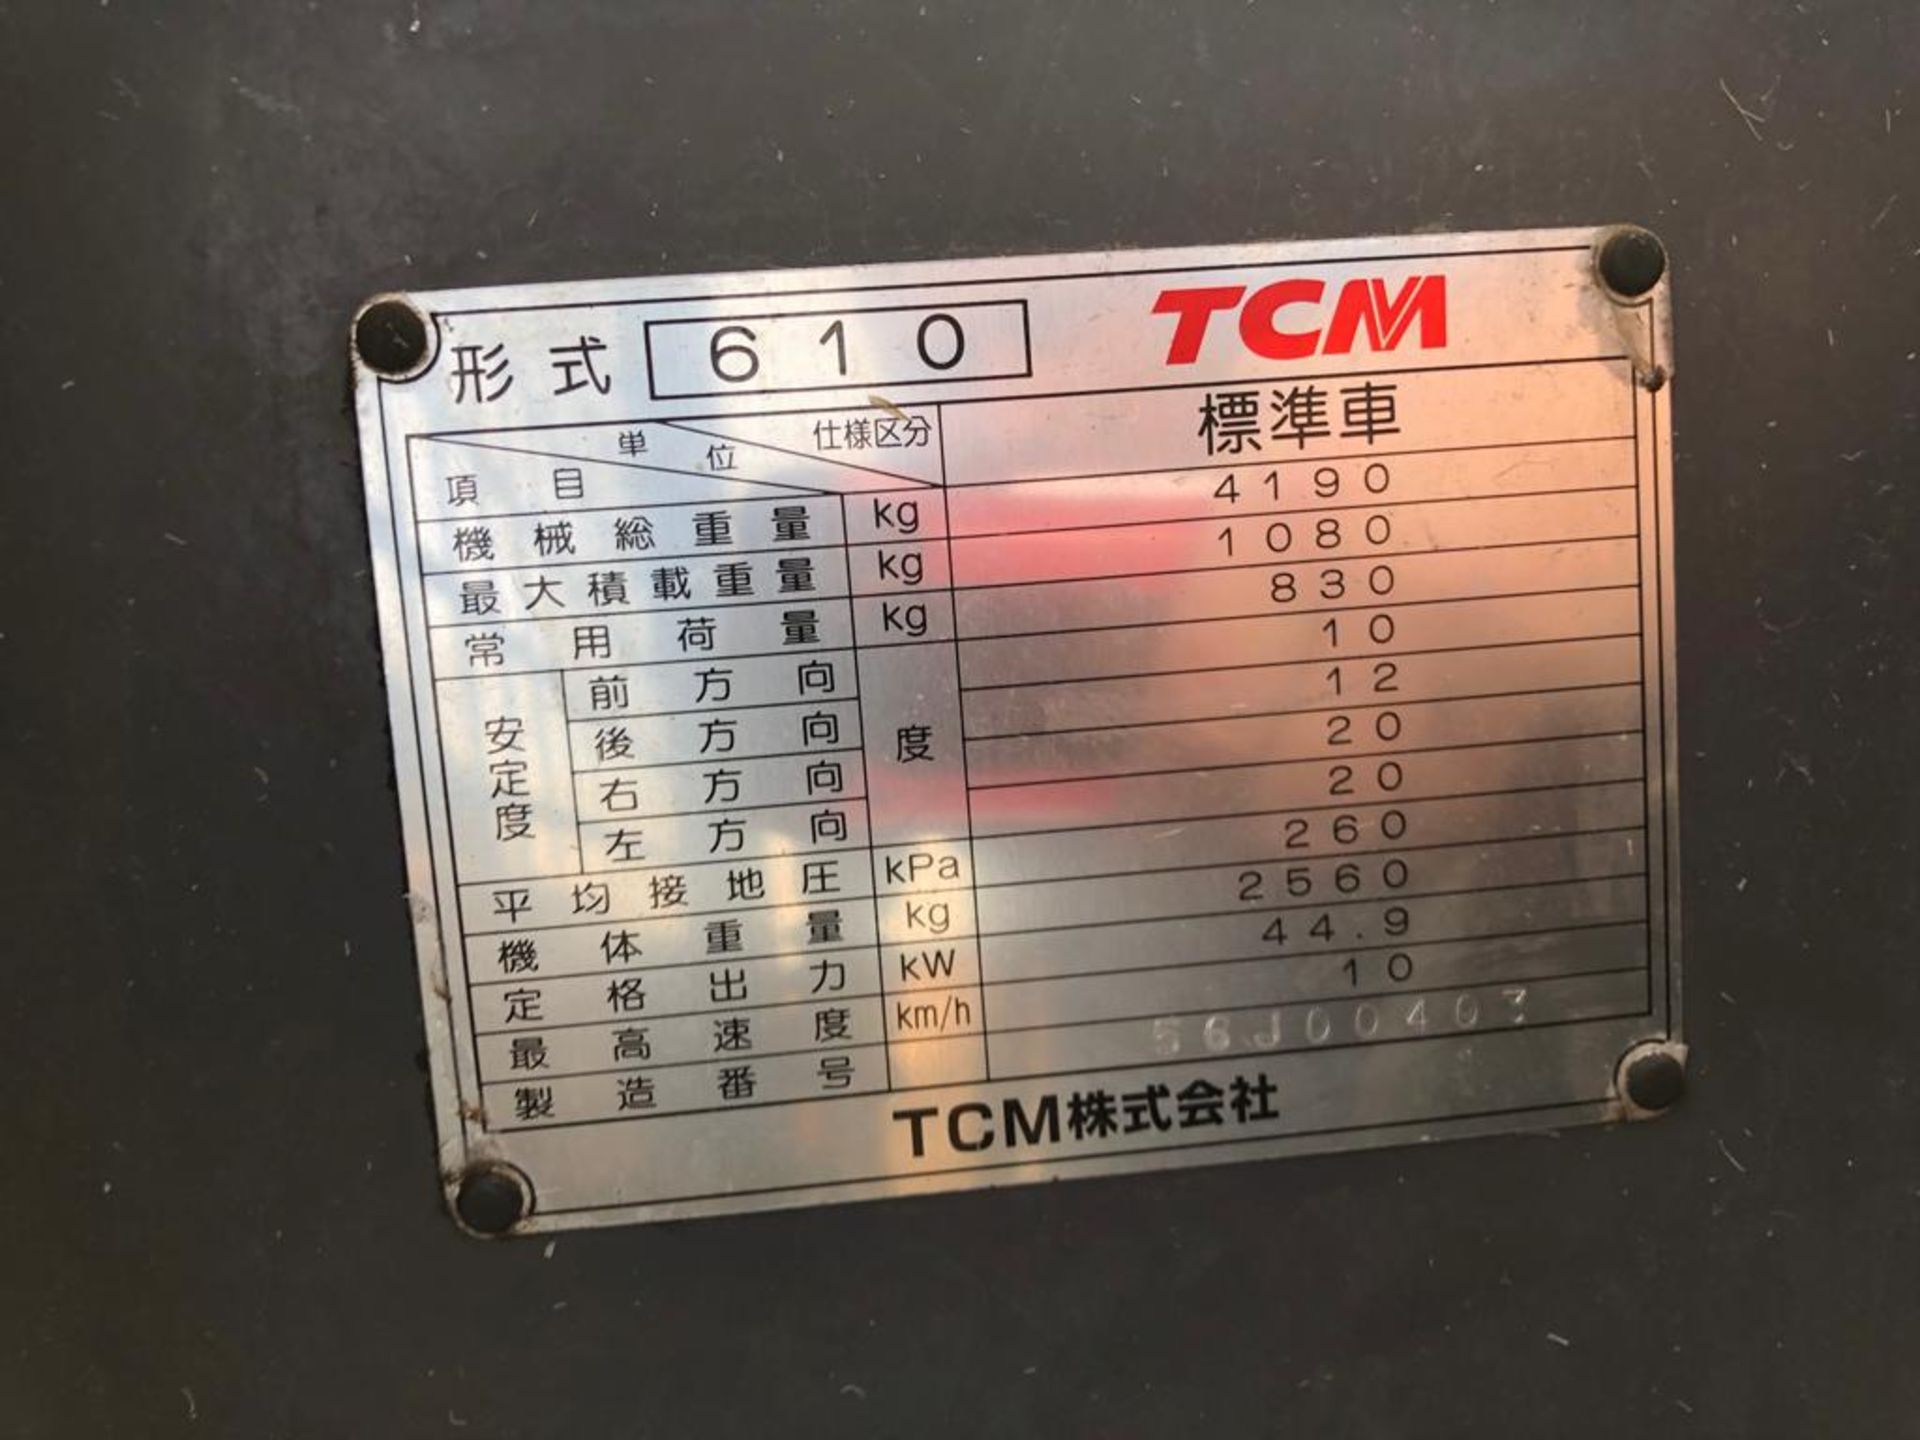 TCM SSL 610 SKID STEER LOADER, SHOWING - 3490 HOURS (UNVERIFIED) *PLUS VAT* - Image 4 of 5